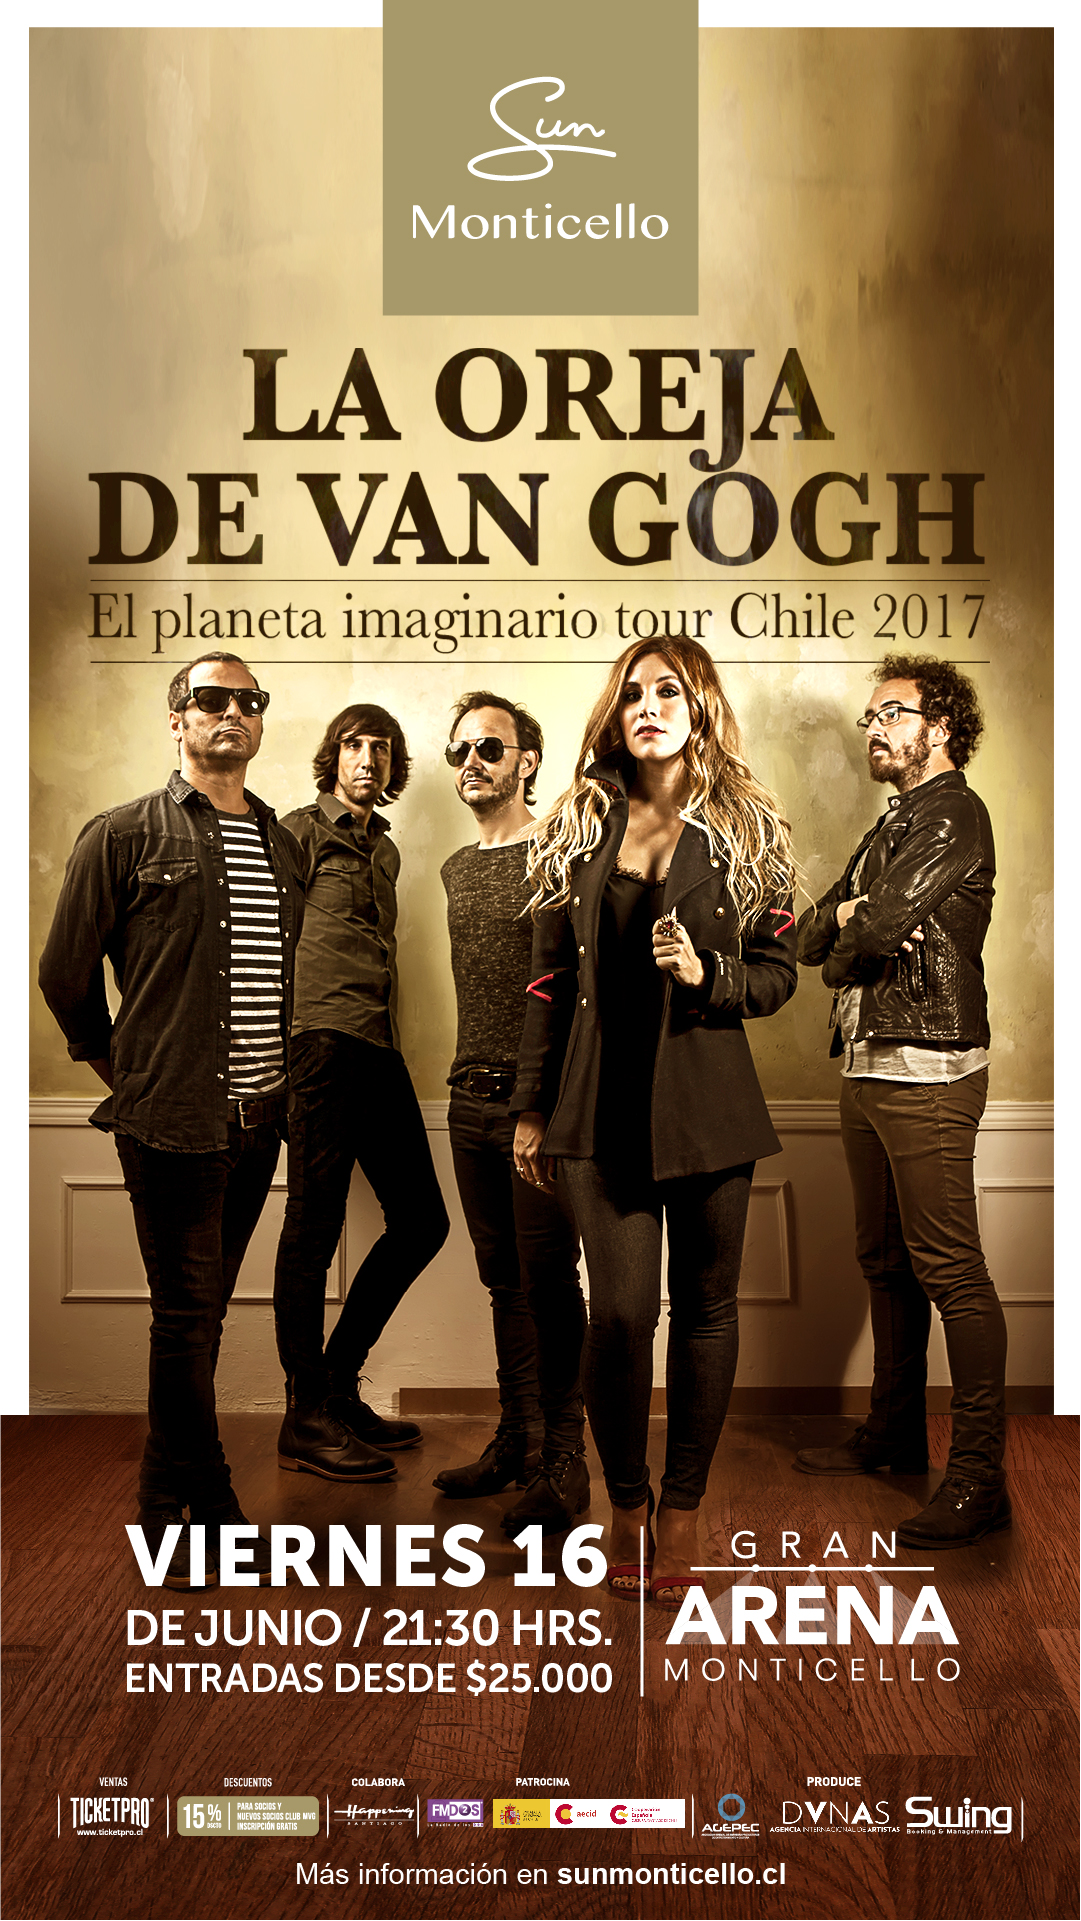 La Oreja de Van Gogh Chile - #ElPlanetaImaginario hoy celebra 4 años desde  su lanzamiento!! 😍 ¿Canción favorita? ¿Disco o vinilo? Cuentanos que  recuerdas con este maravilloso disco 😁